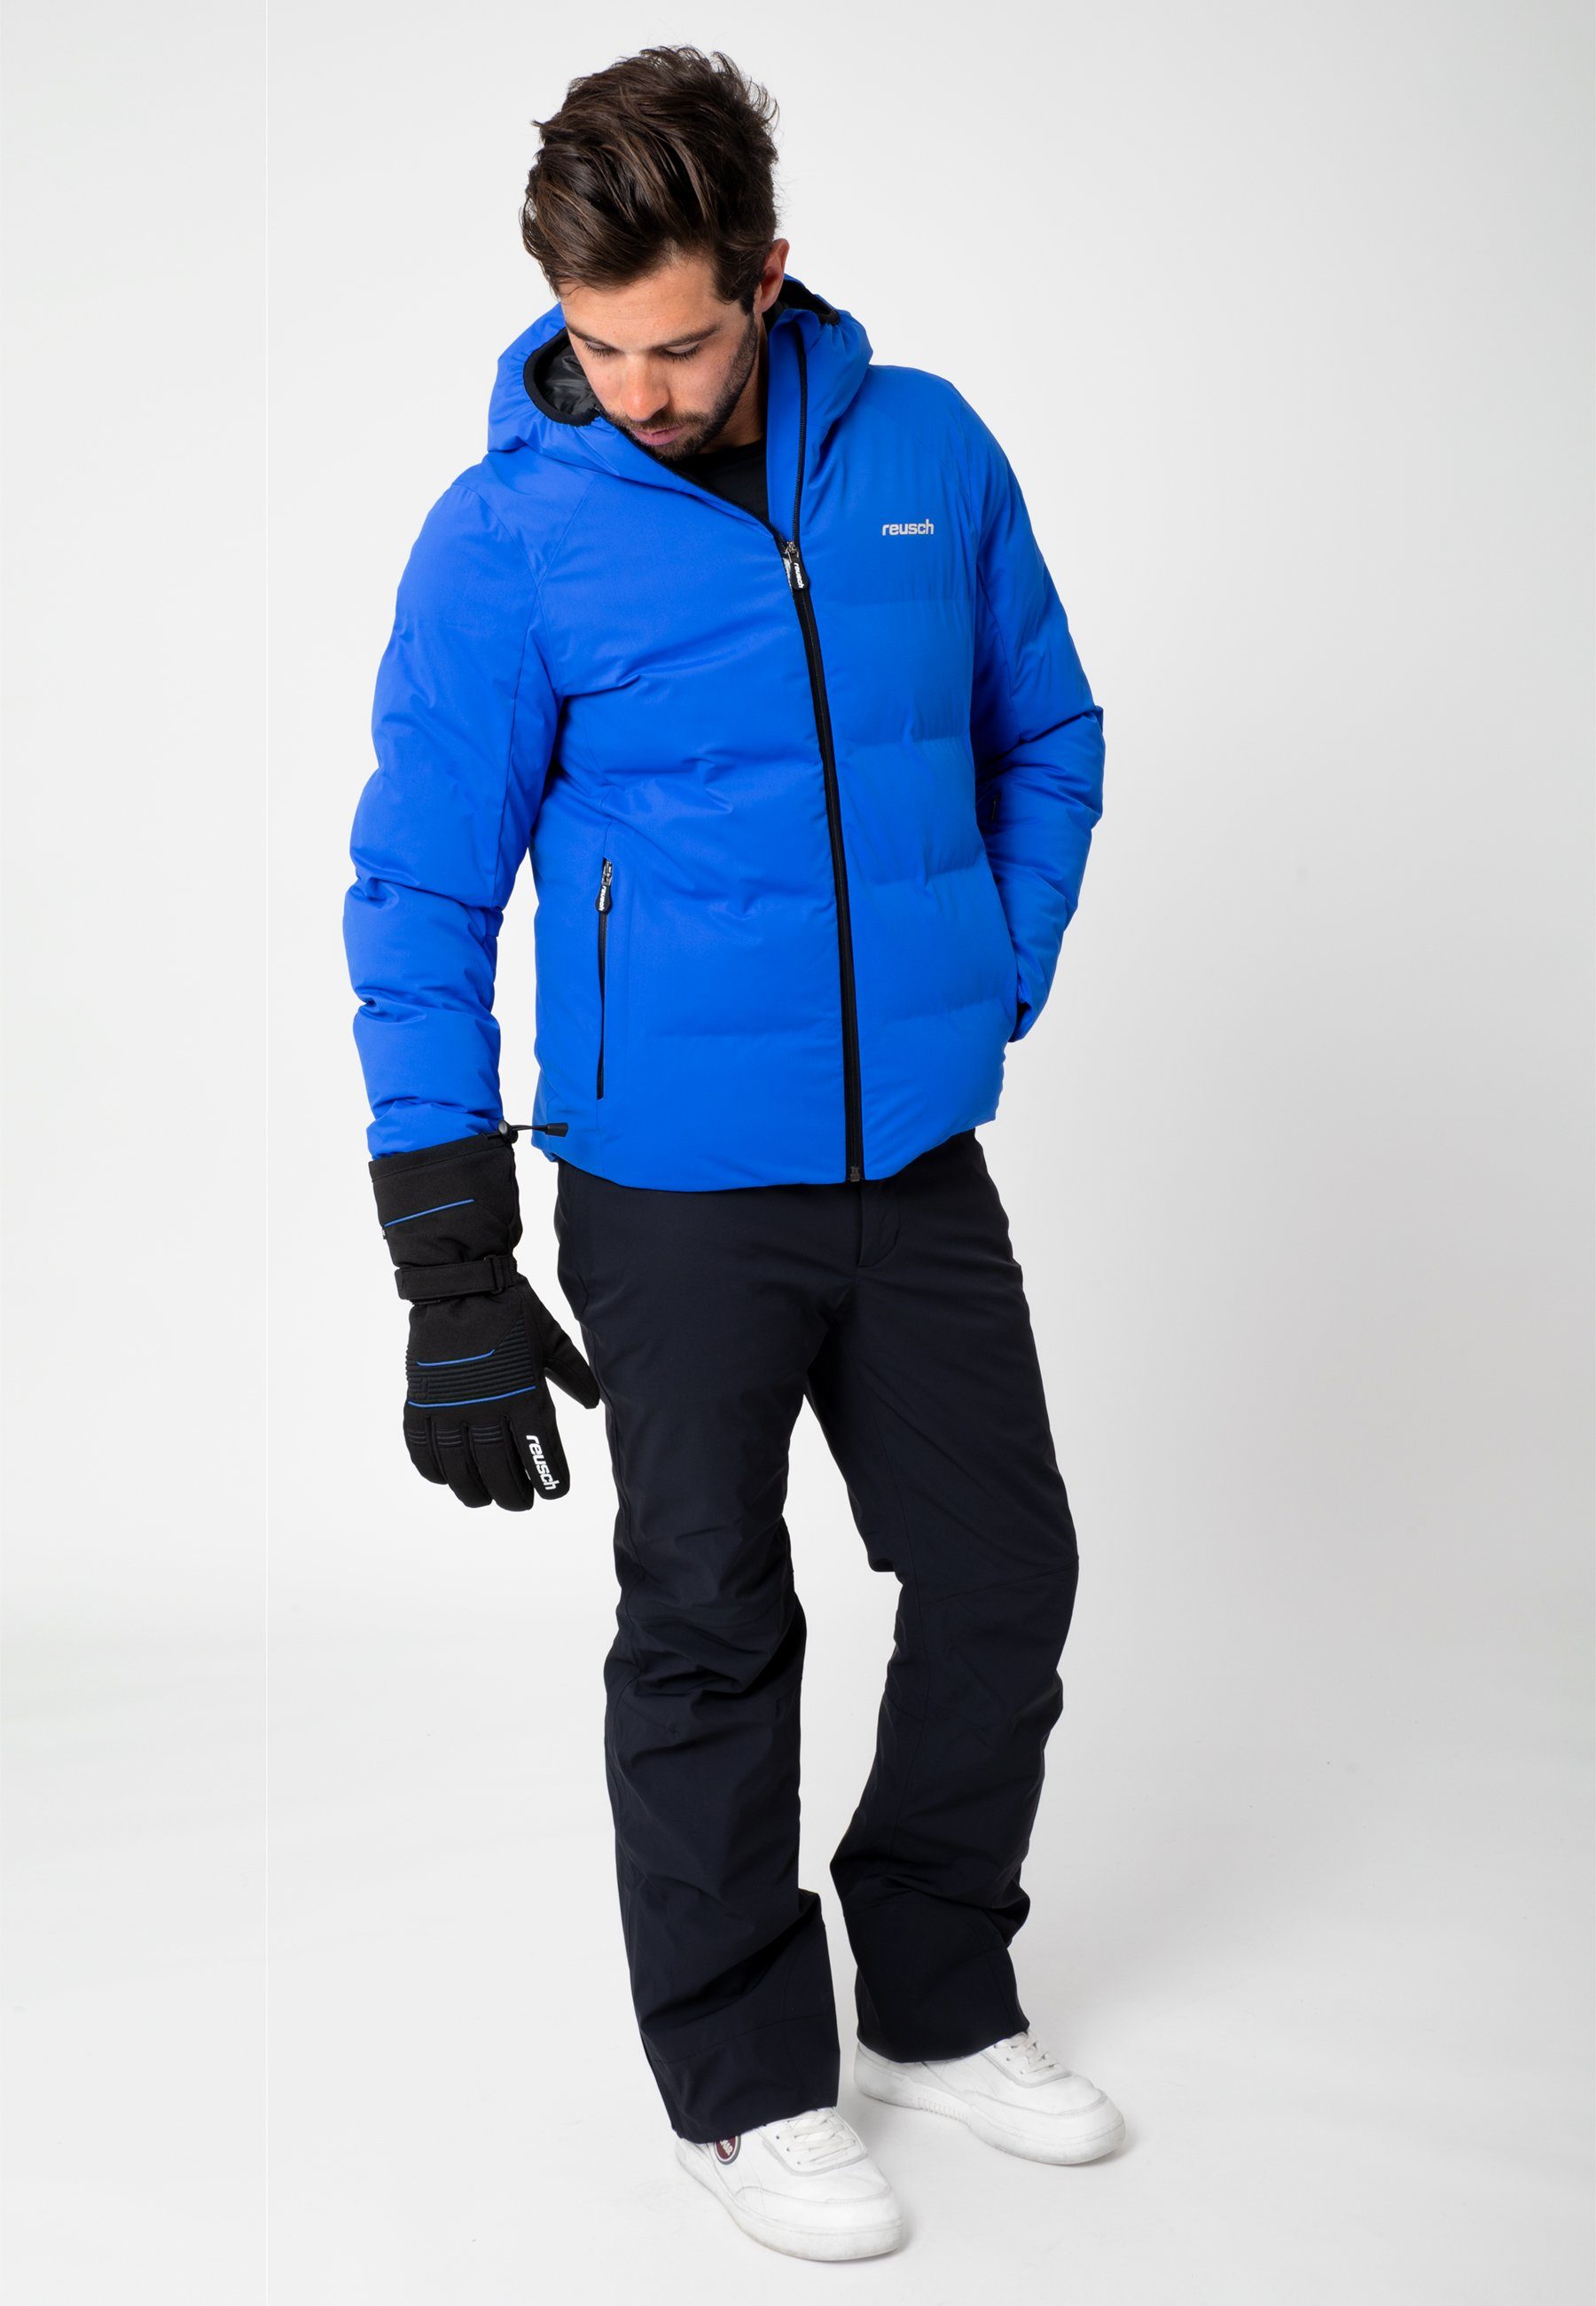 blau-schwarz R-TEX® XT Design sportlichem in Crosby Reusch Skihandschuhe